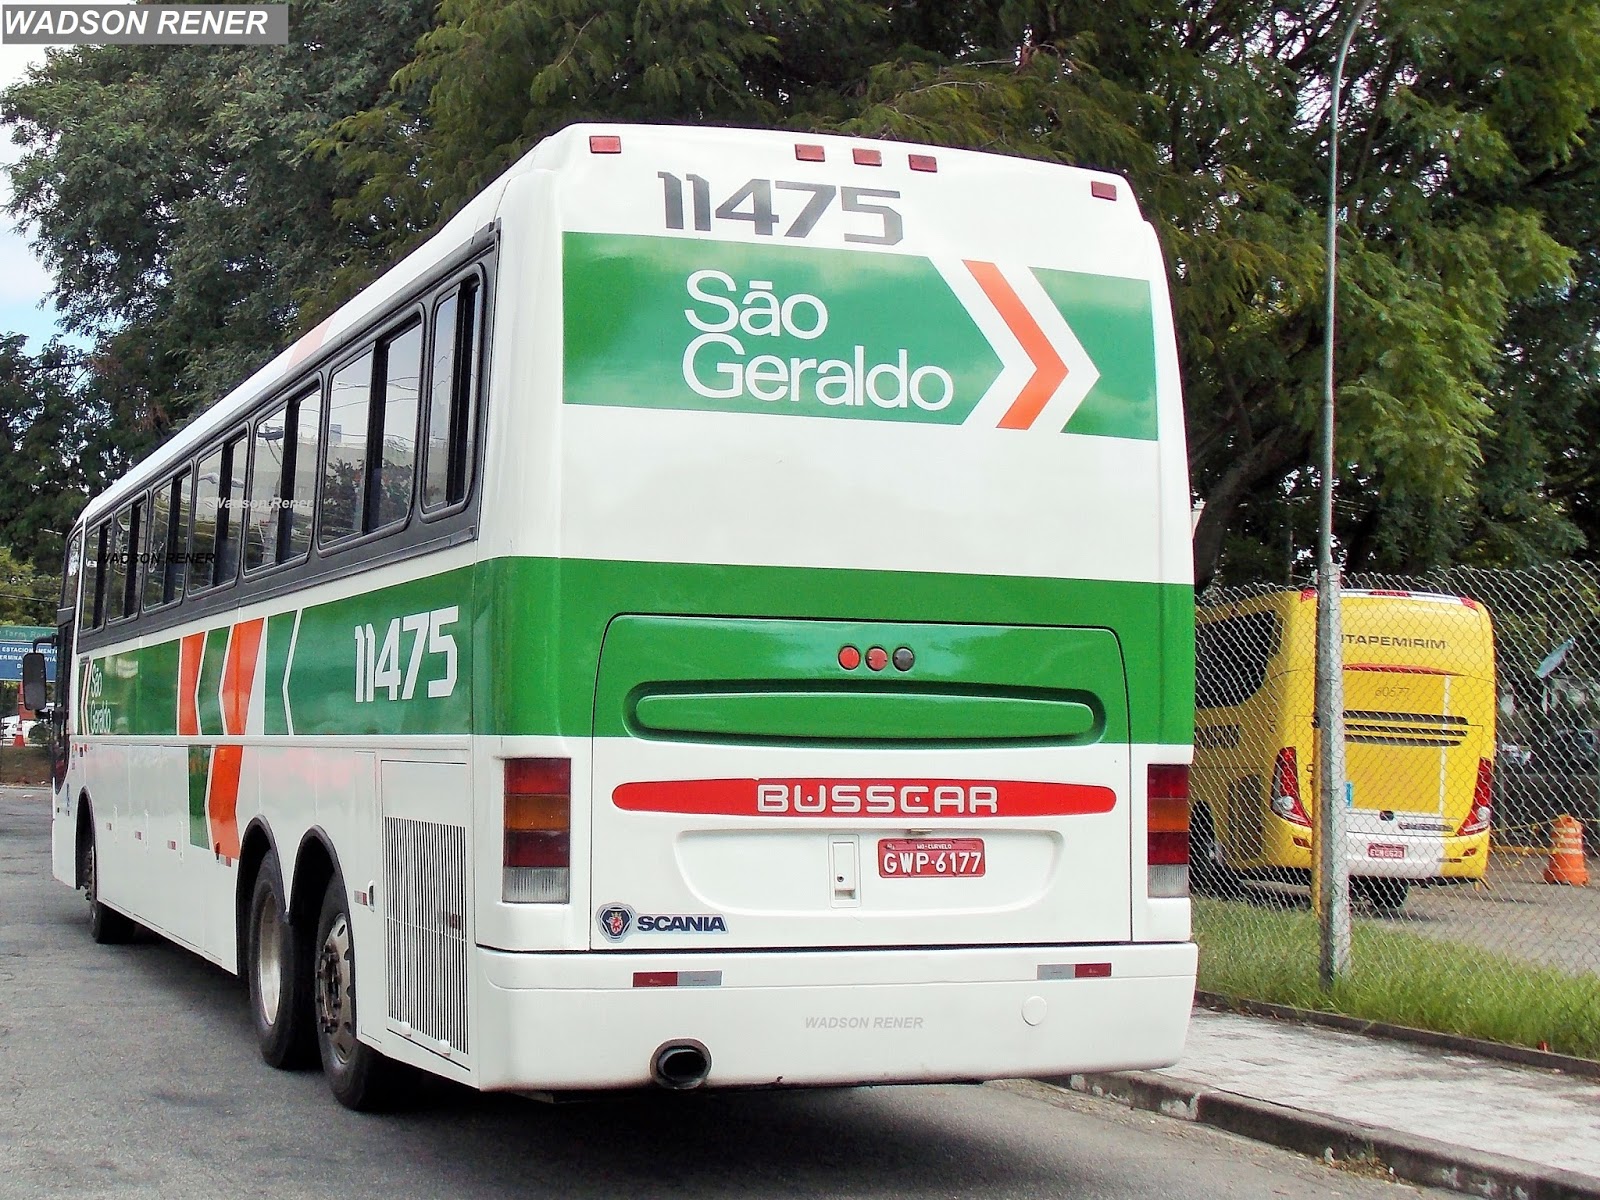 S%25C3%25A3o+Geraldo+11475+Jum+Buss+360+